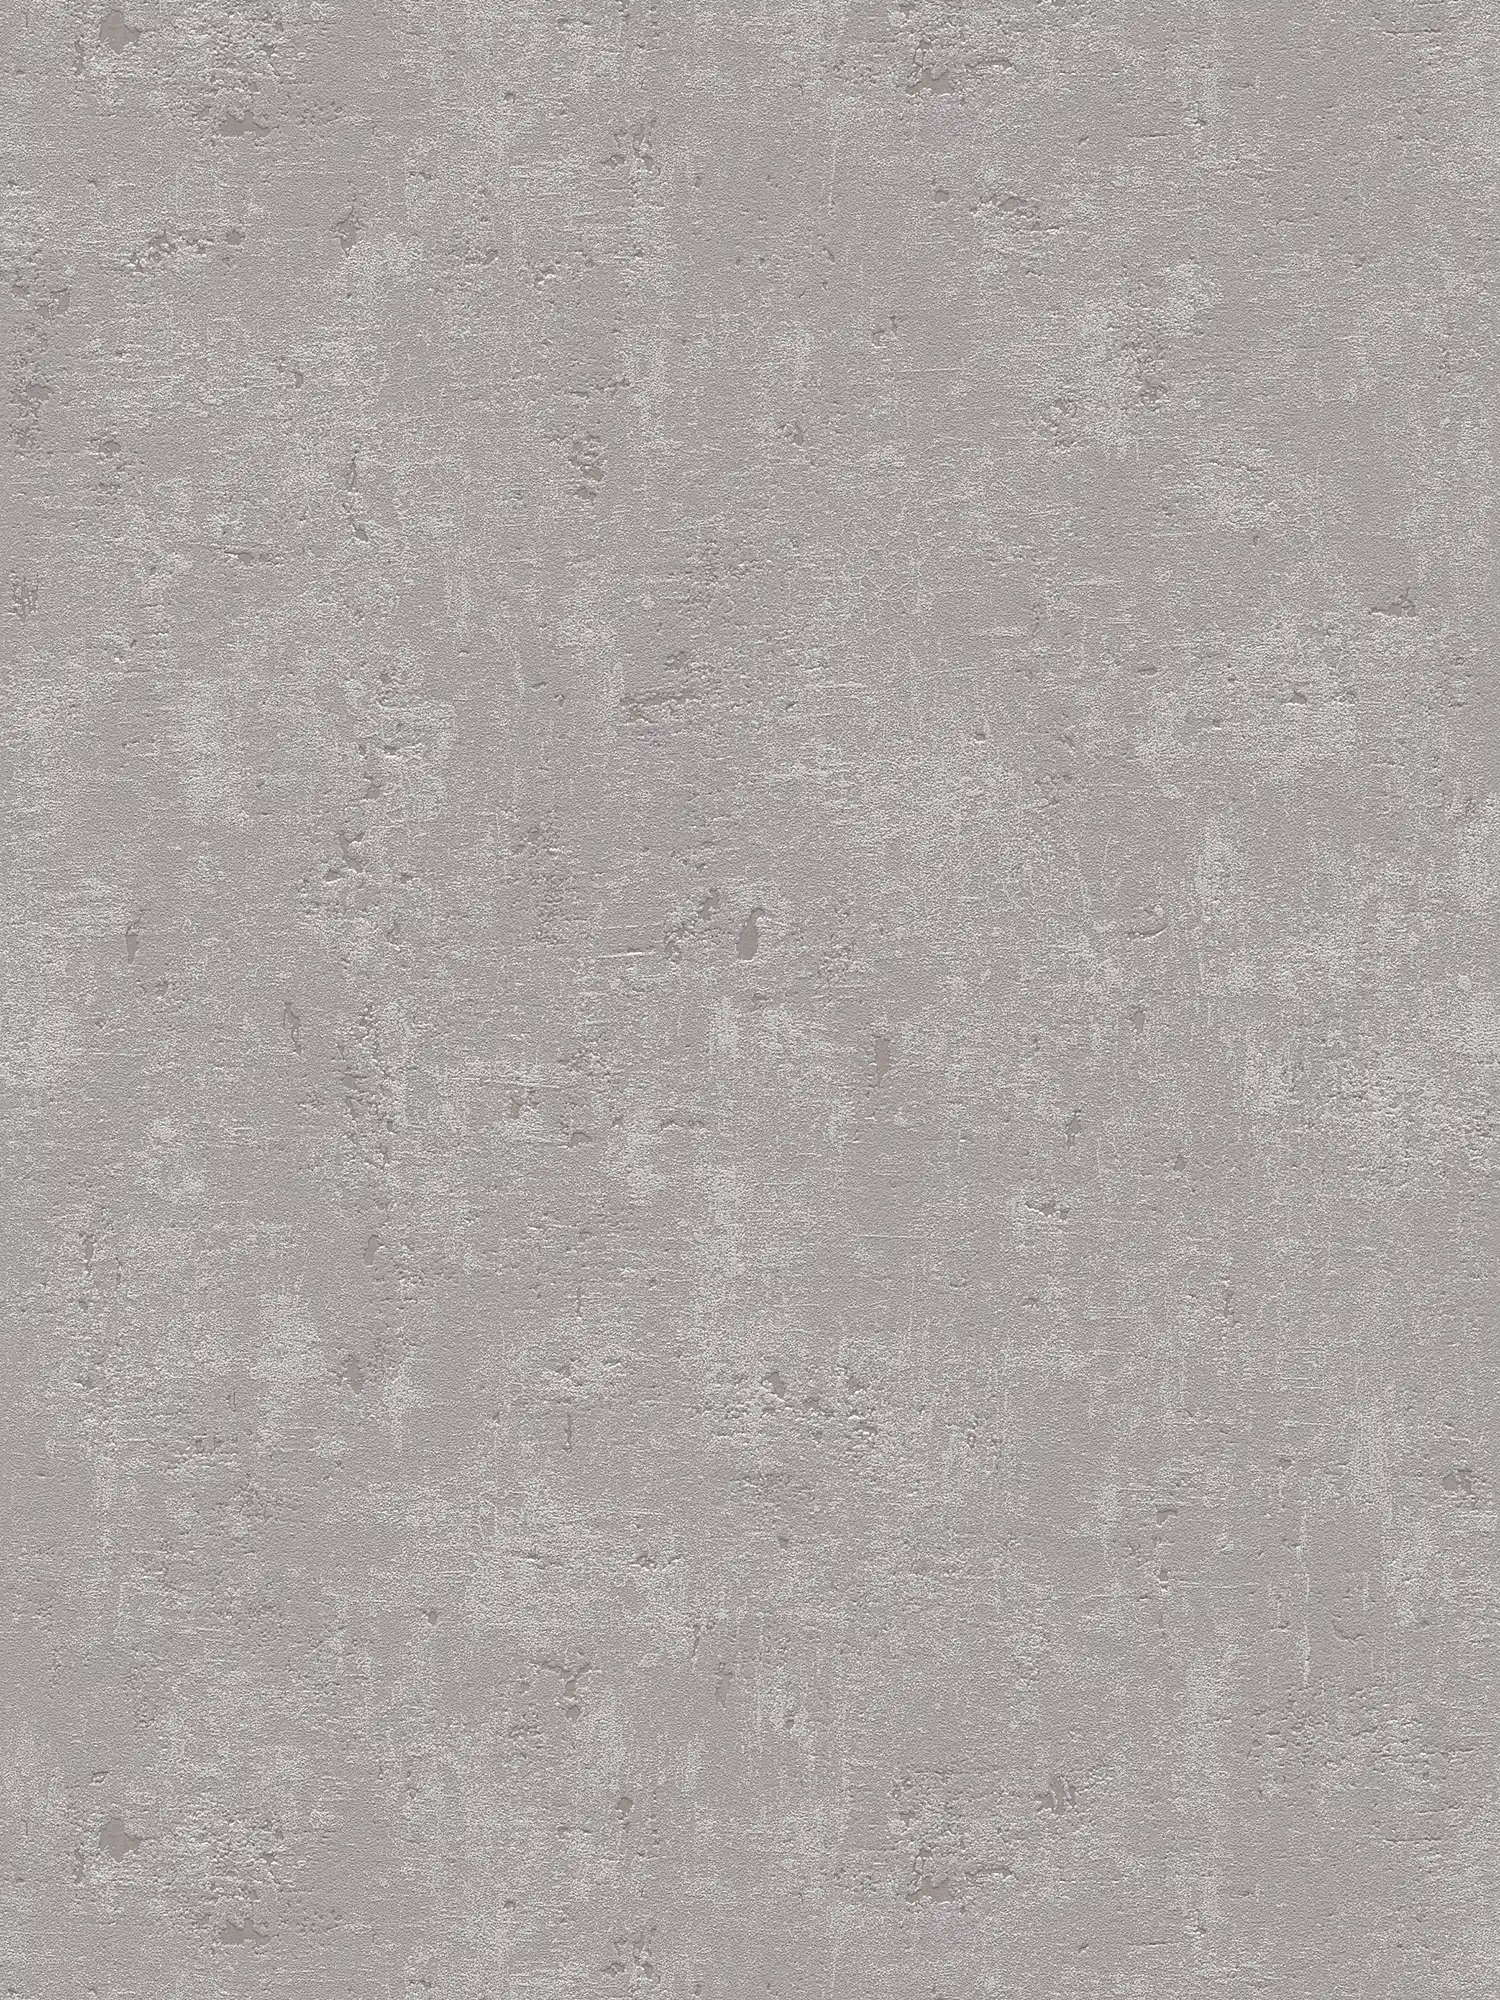 Papel pintado con aspecto de hormigón gris rústico con textura en la superficie
